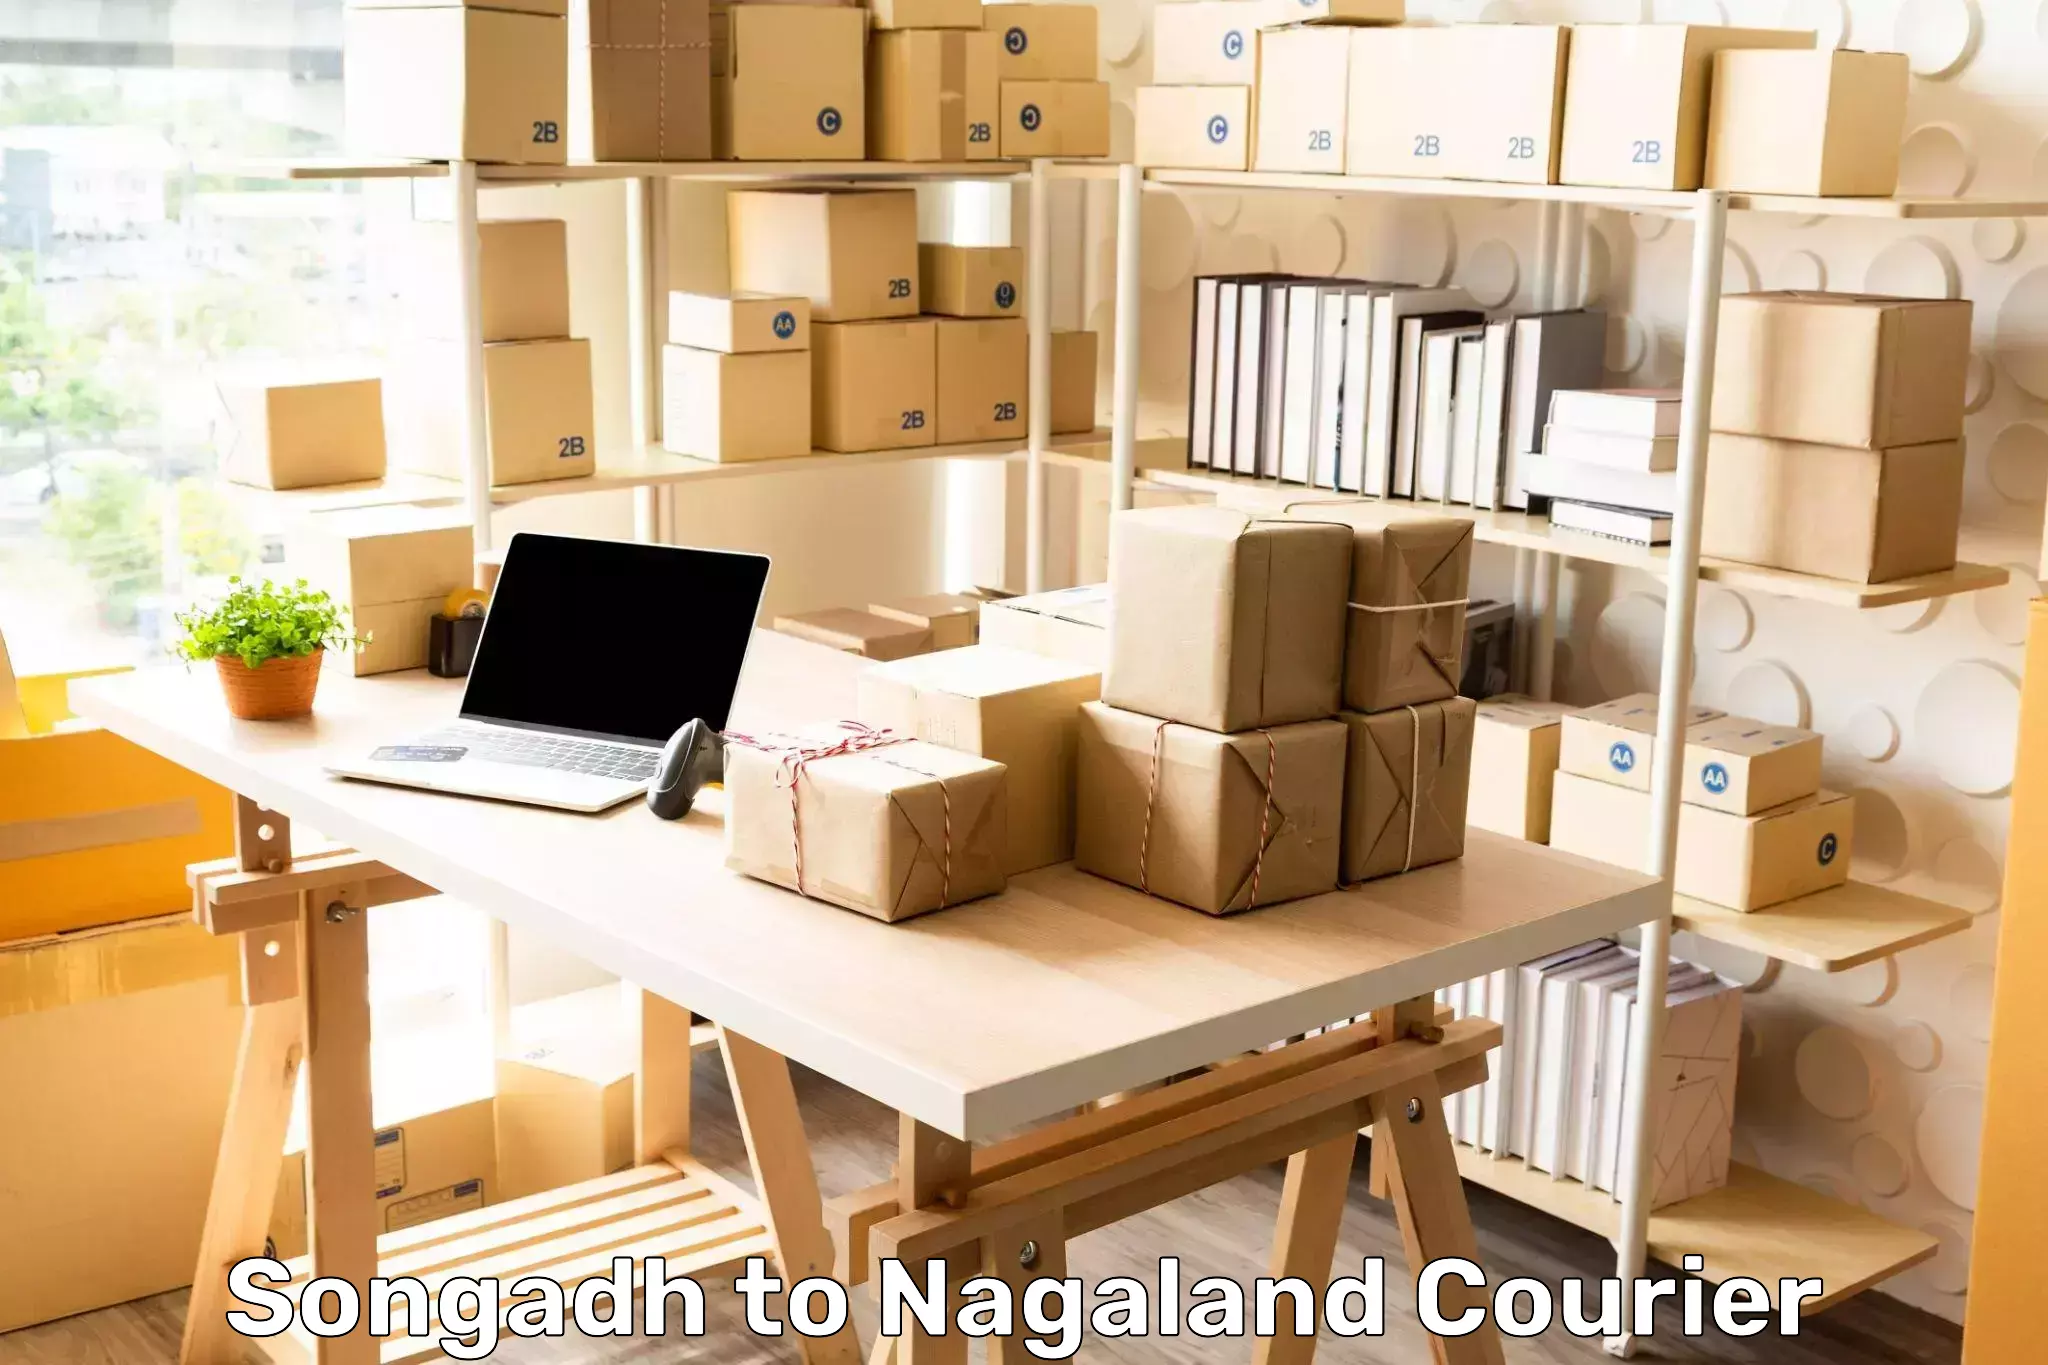 Door-to-door shipment Songadh to Nagaland